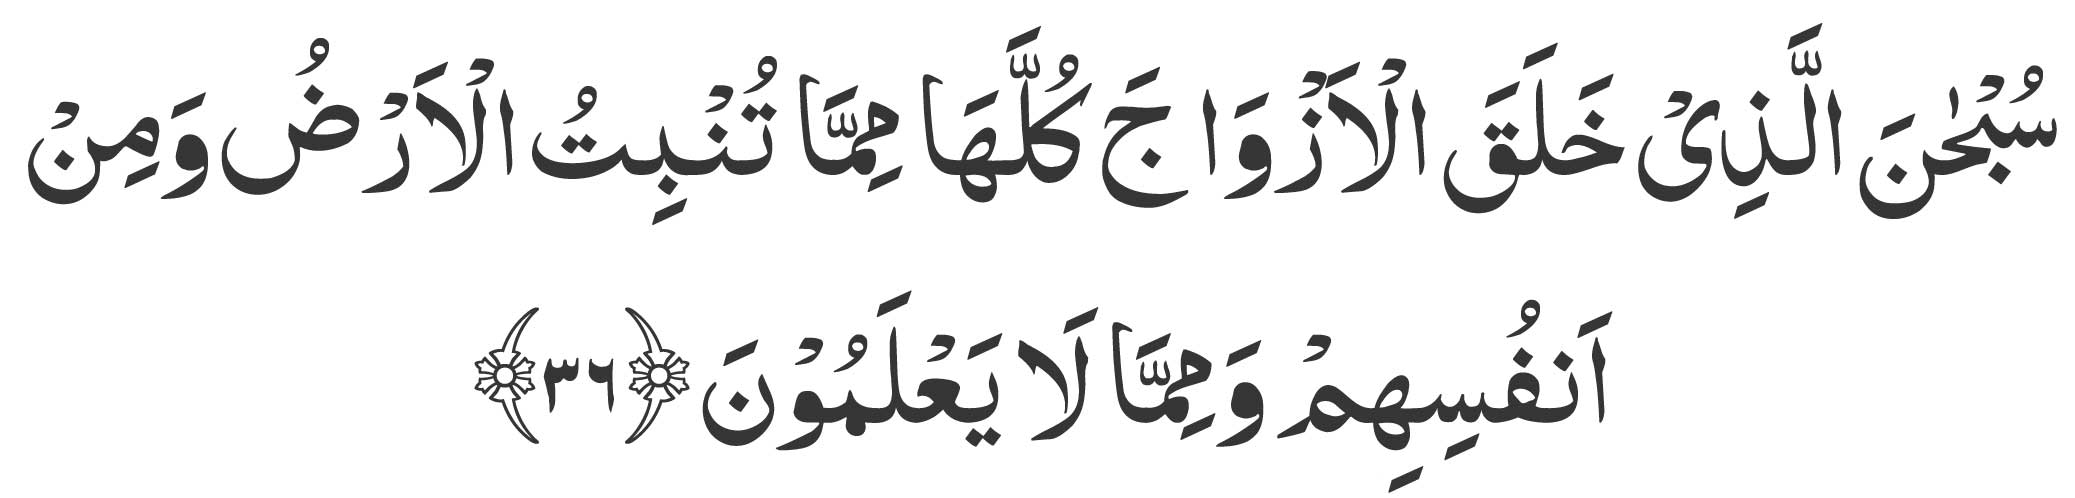 surah yasin ayat 36 in arabic